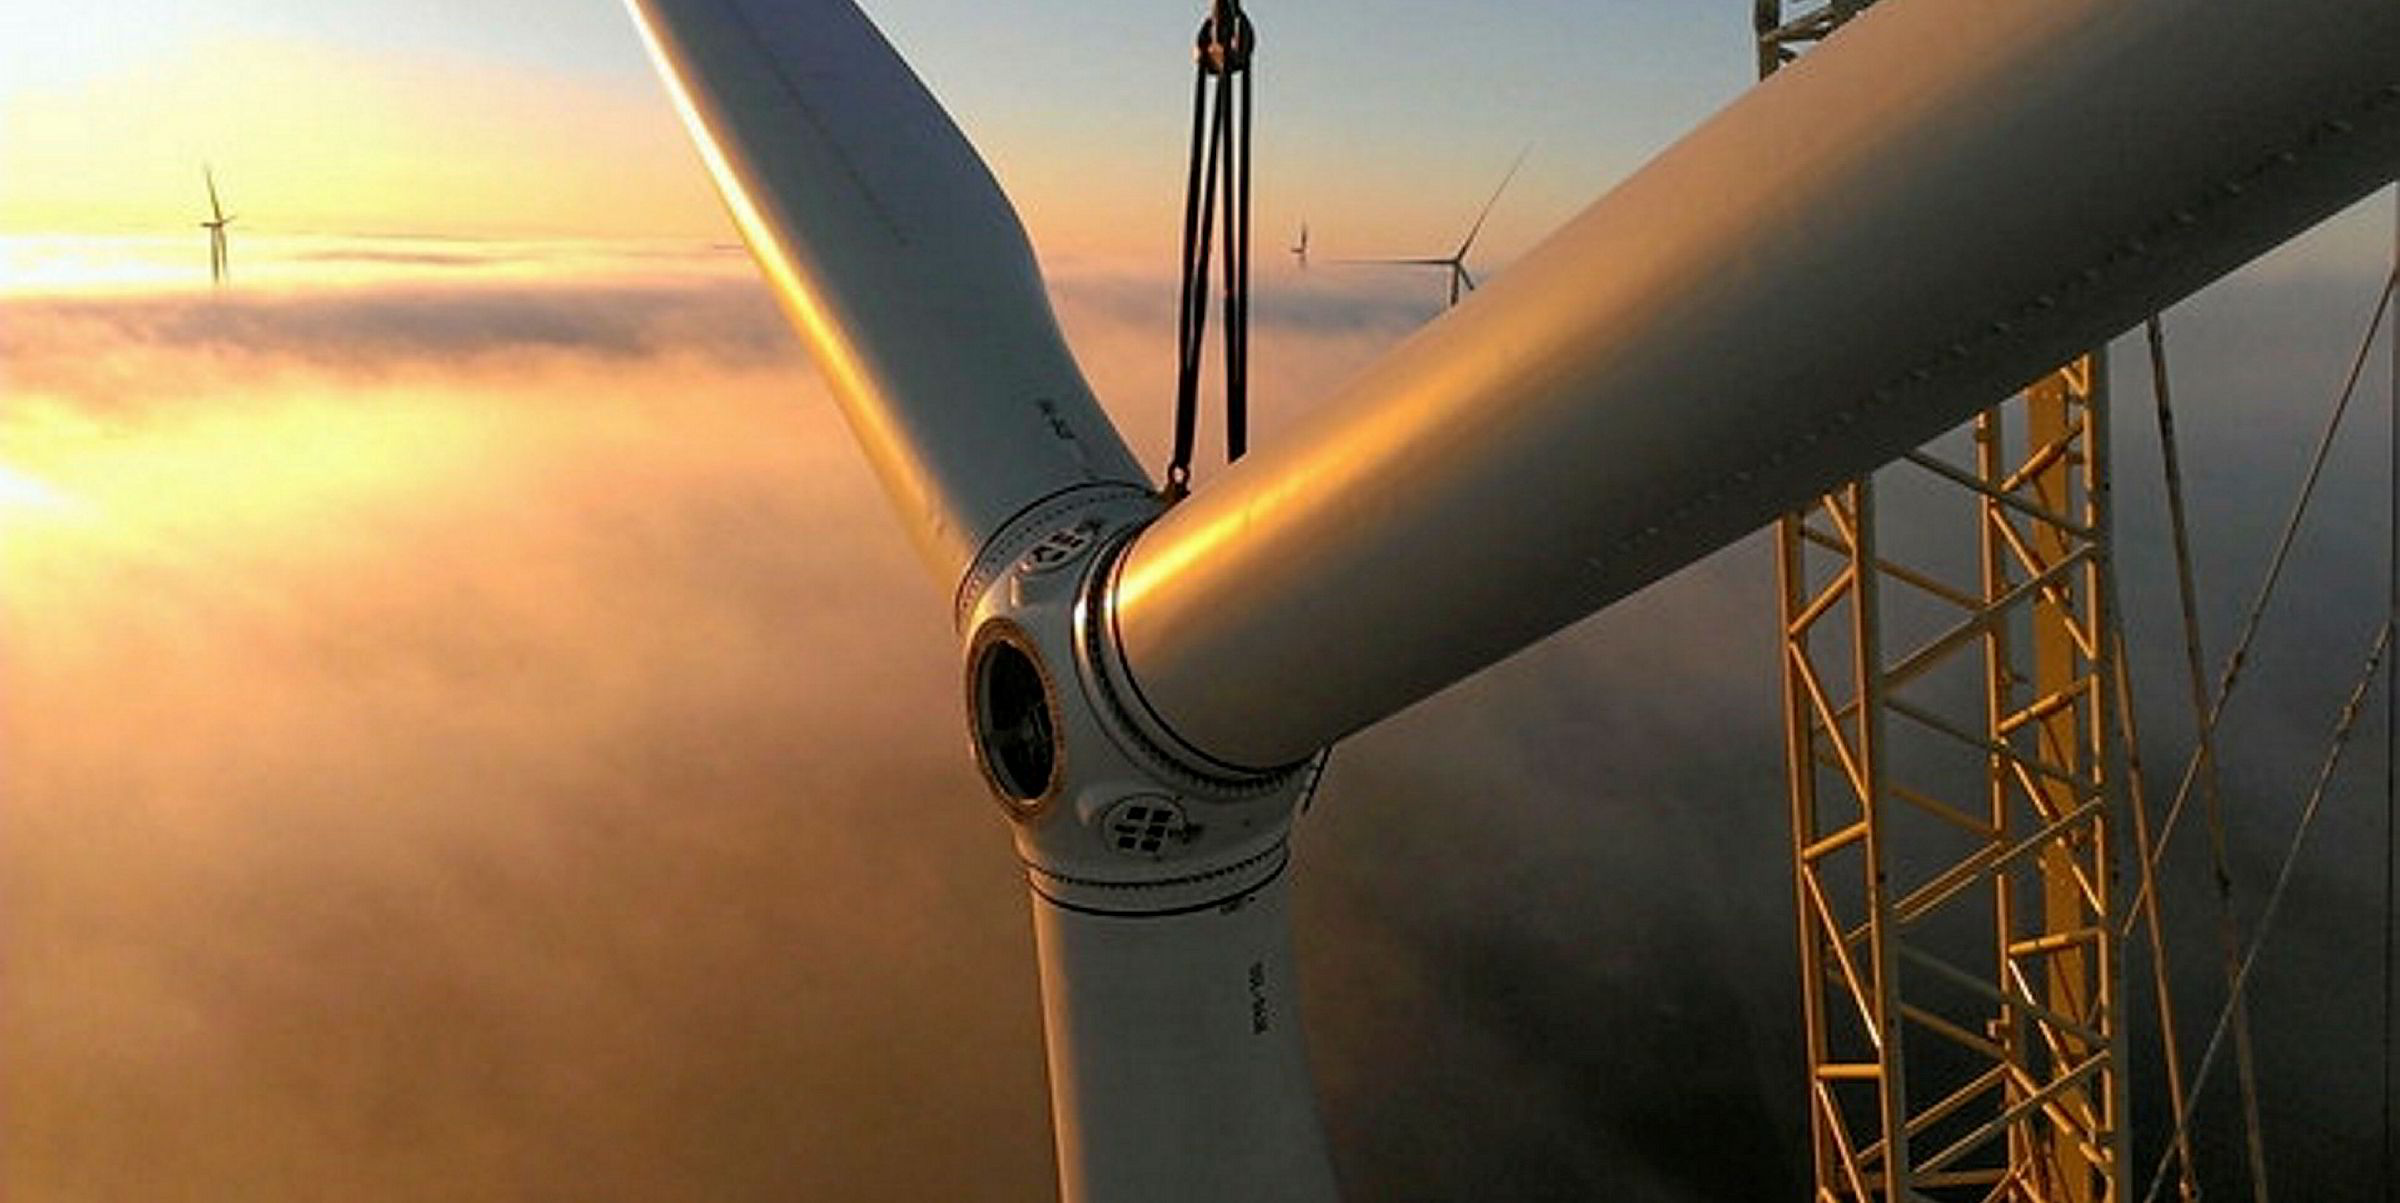 Lagoa dos ventos: the new wind farm in Brazil 